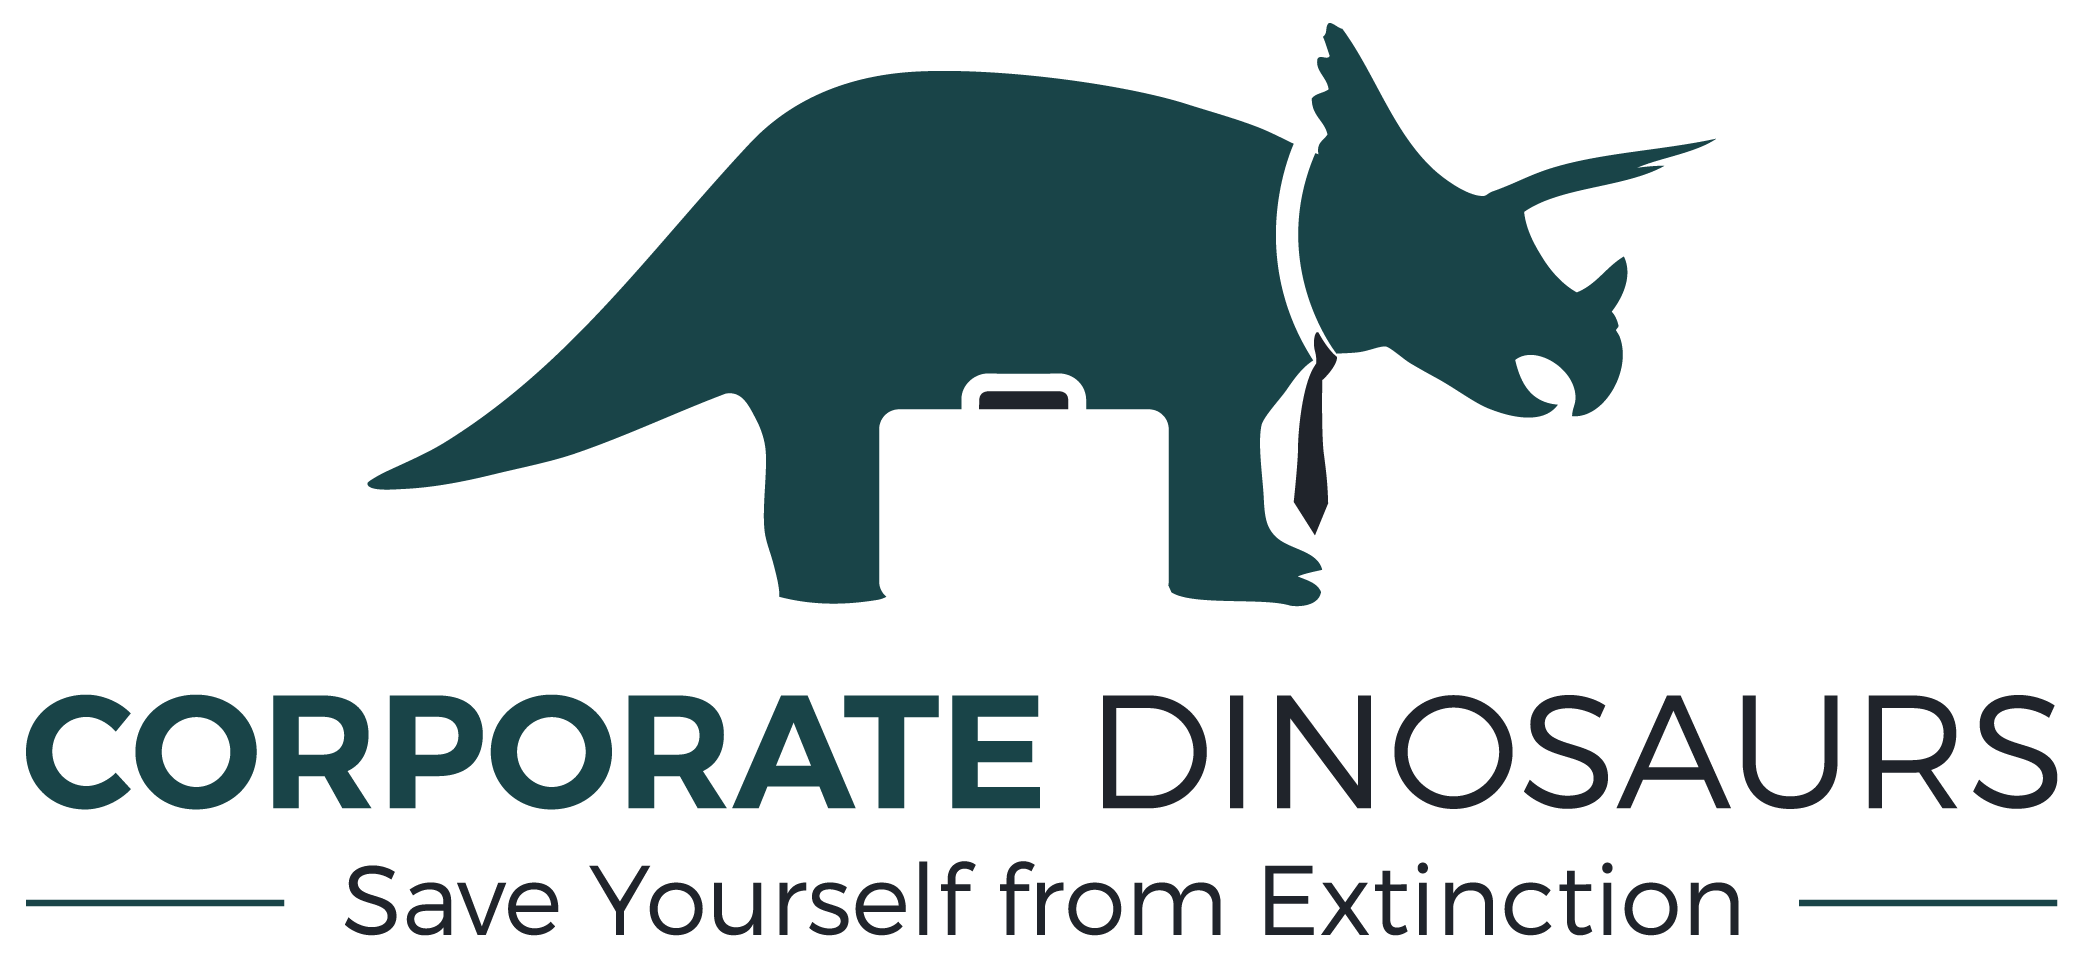 Dinosaurs Logo - Corporate Dinosaurs – Corporate Dinosaurs